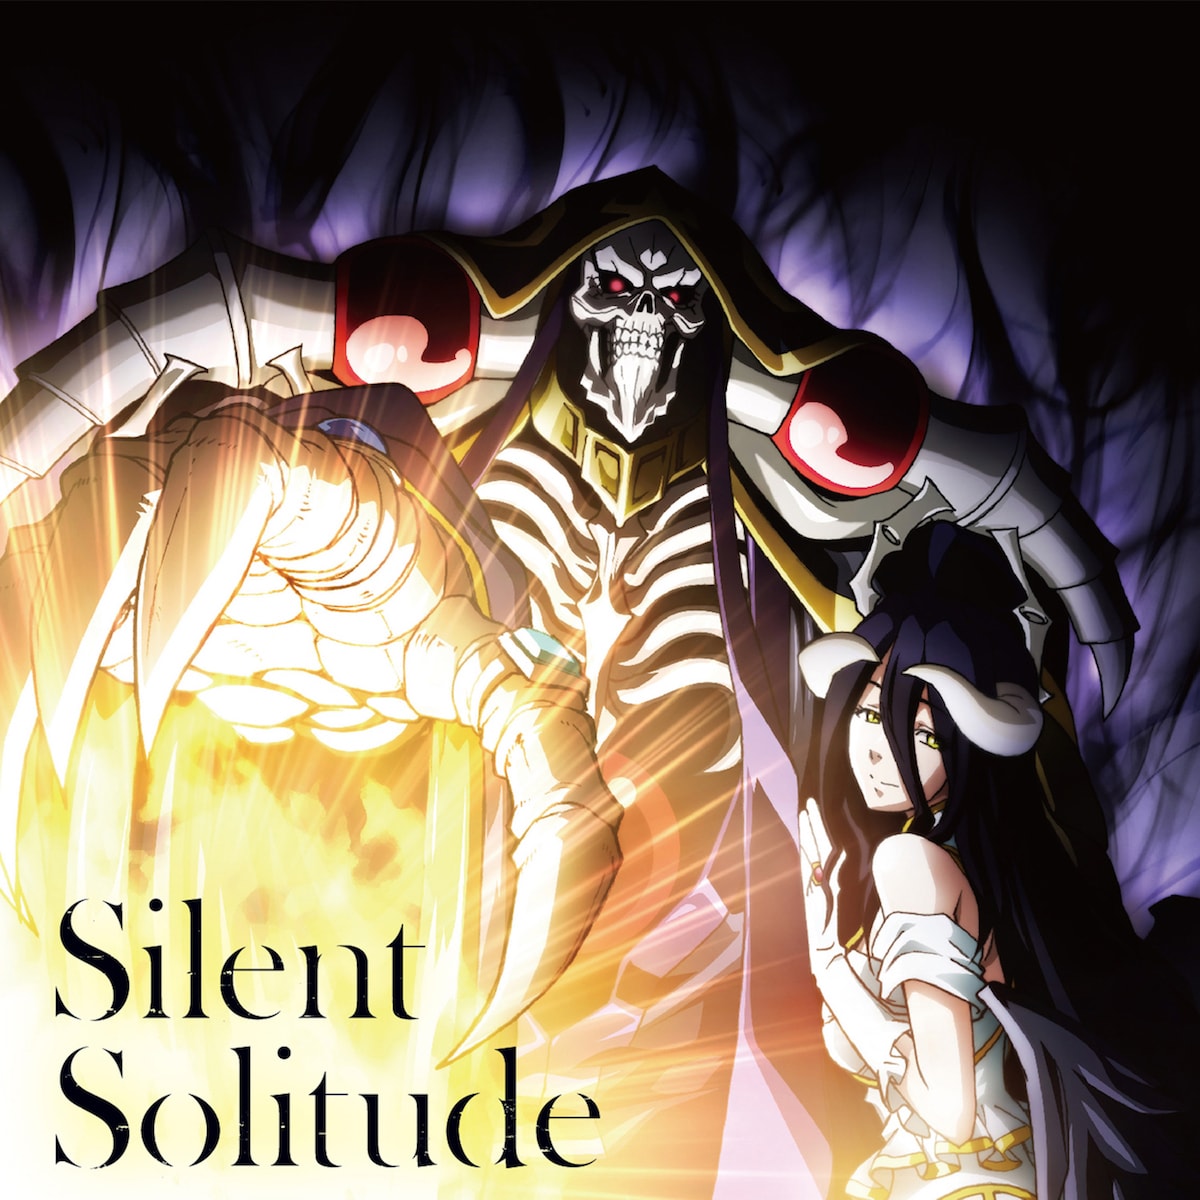 TVアニメ「オーバーロードⅢ」エンディングテーマ「Silent Solitude」